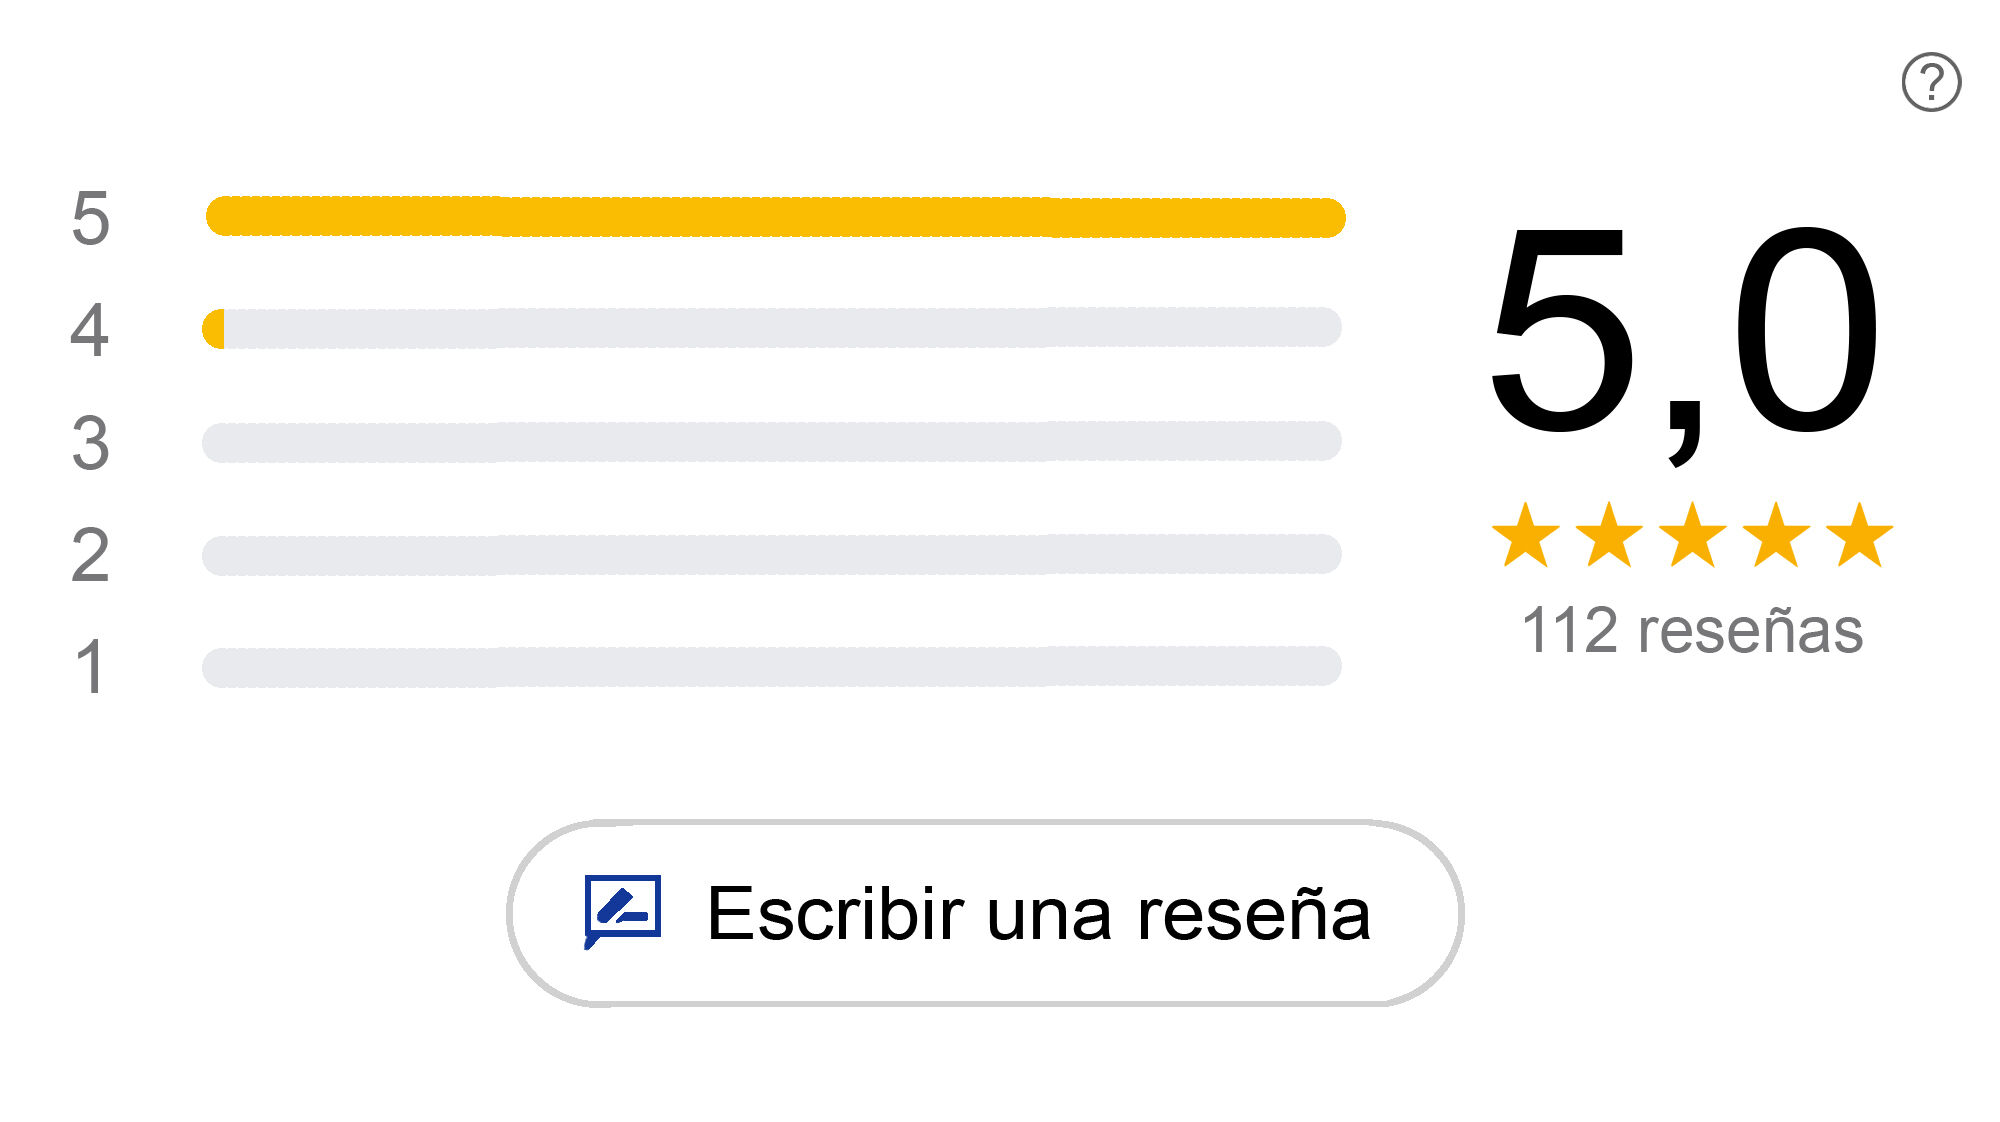 Captura de pantalla de la media de valoraciones en la ficha de Google My Business de José María Márquez Fotógrafo. 112 reseñas con valoración media de 5 estrellas.